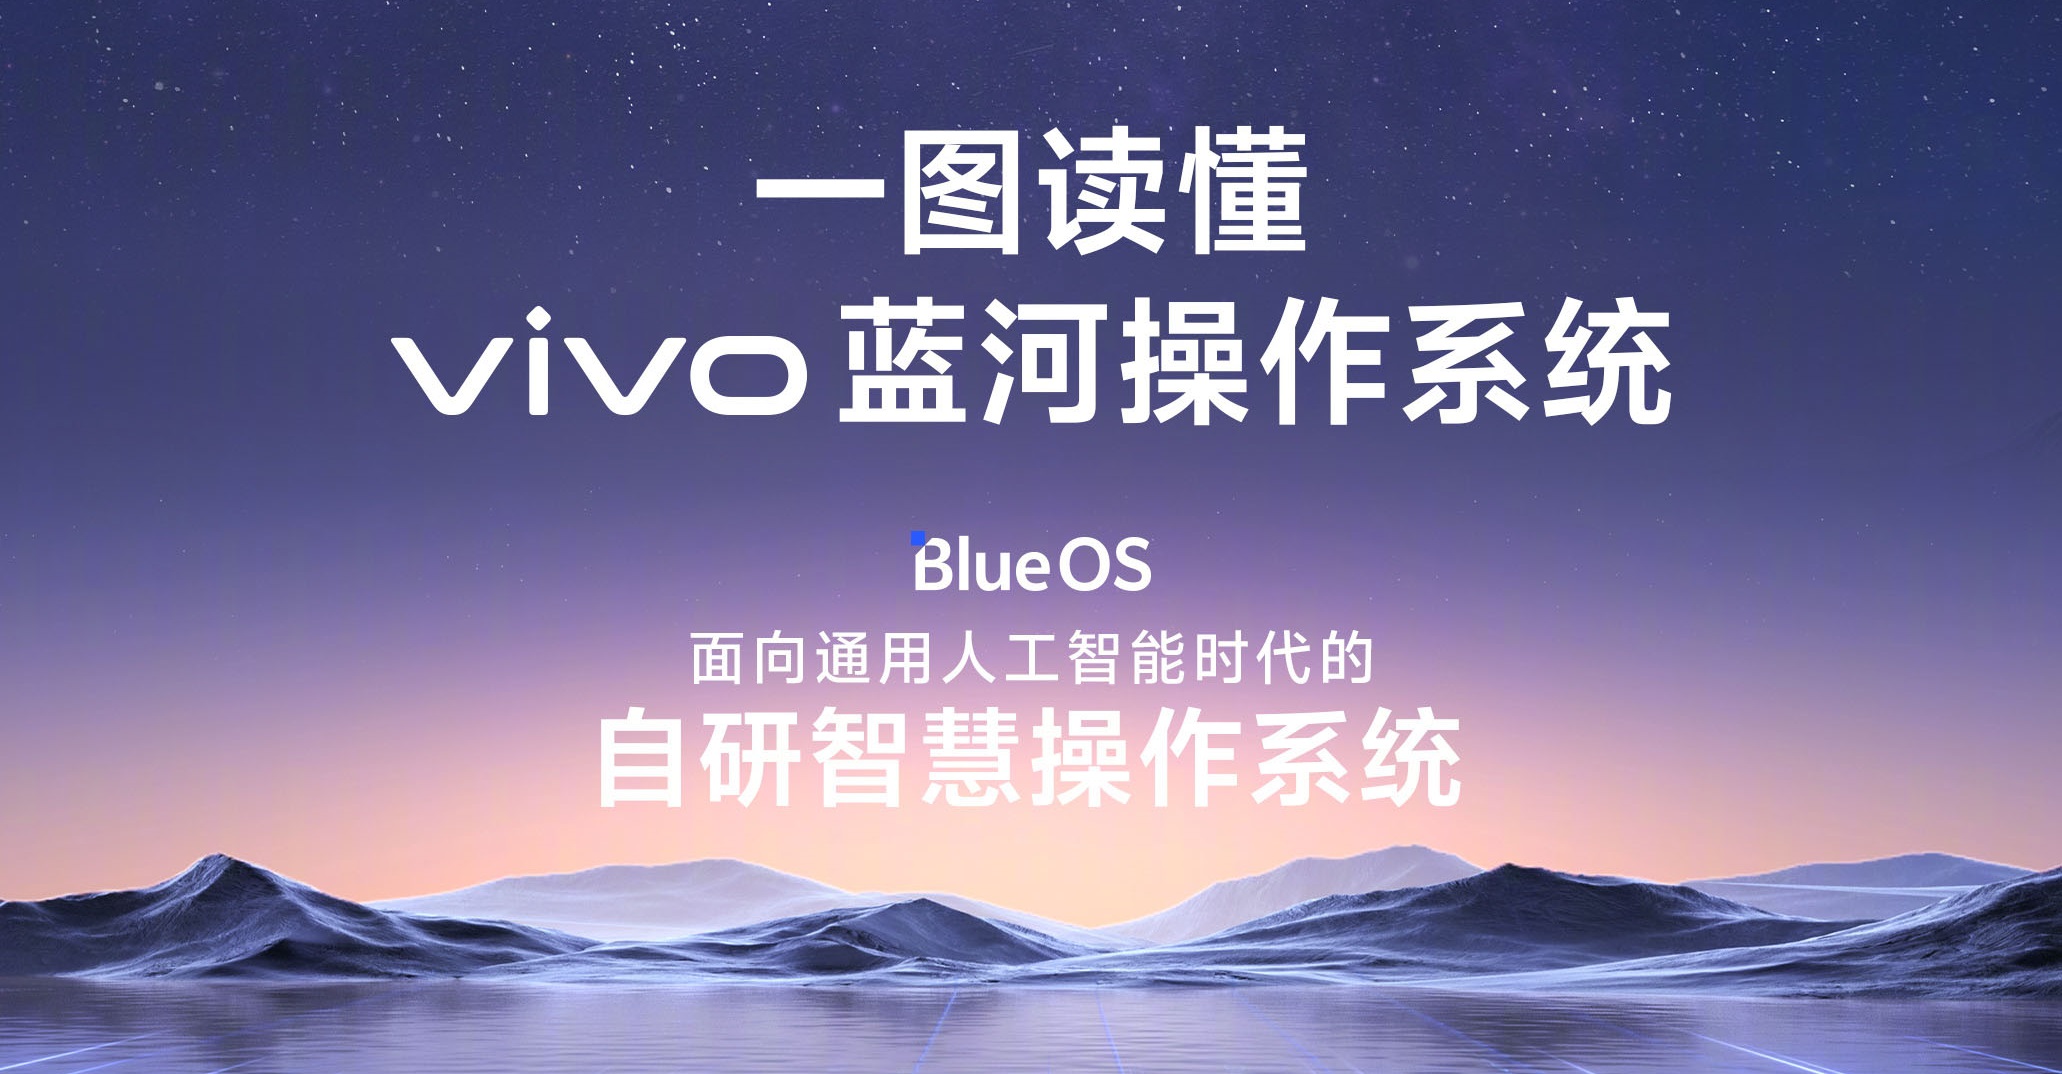 vivo tillkännagav operativsystemet BlueOS baserat på programmeringsspråket Rust för allestädes närvarande AI